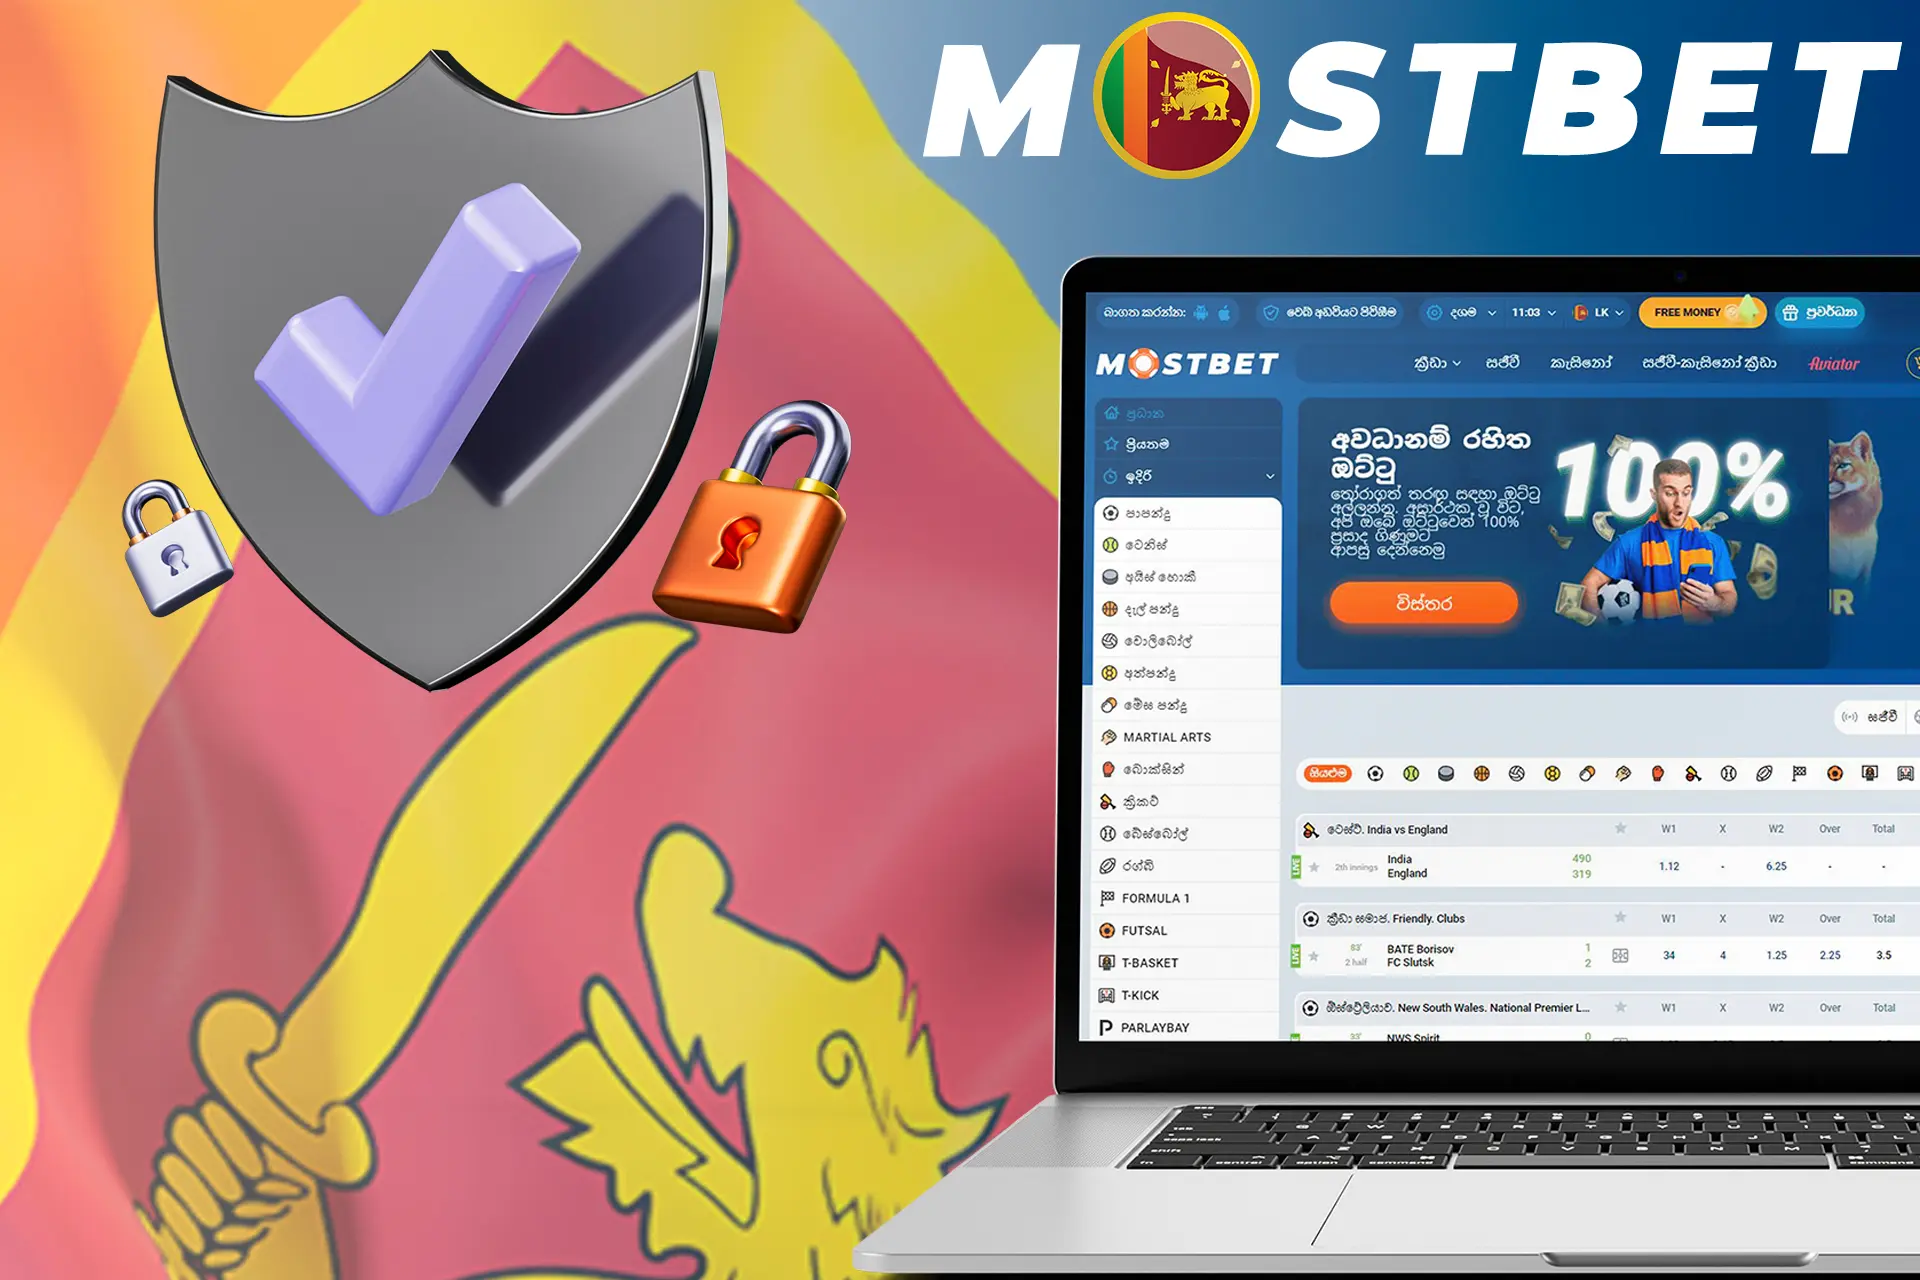 Mostbet Sri Lanka is a legal and safe platform